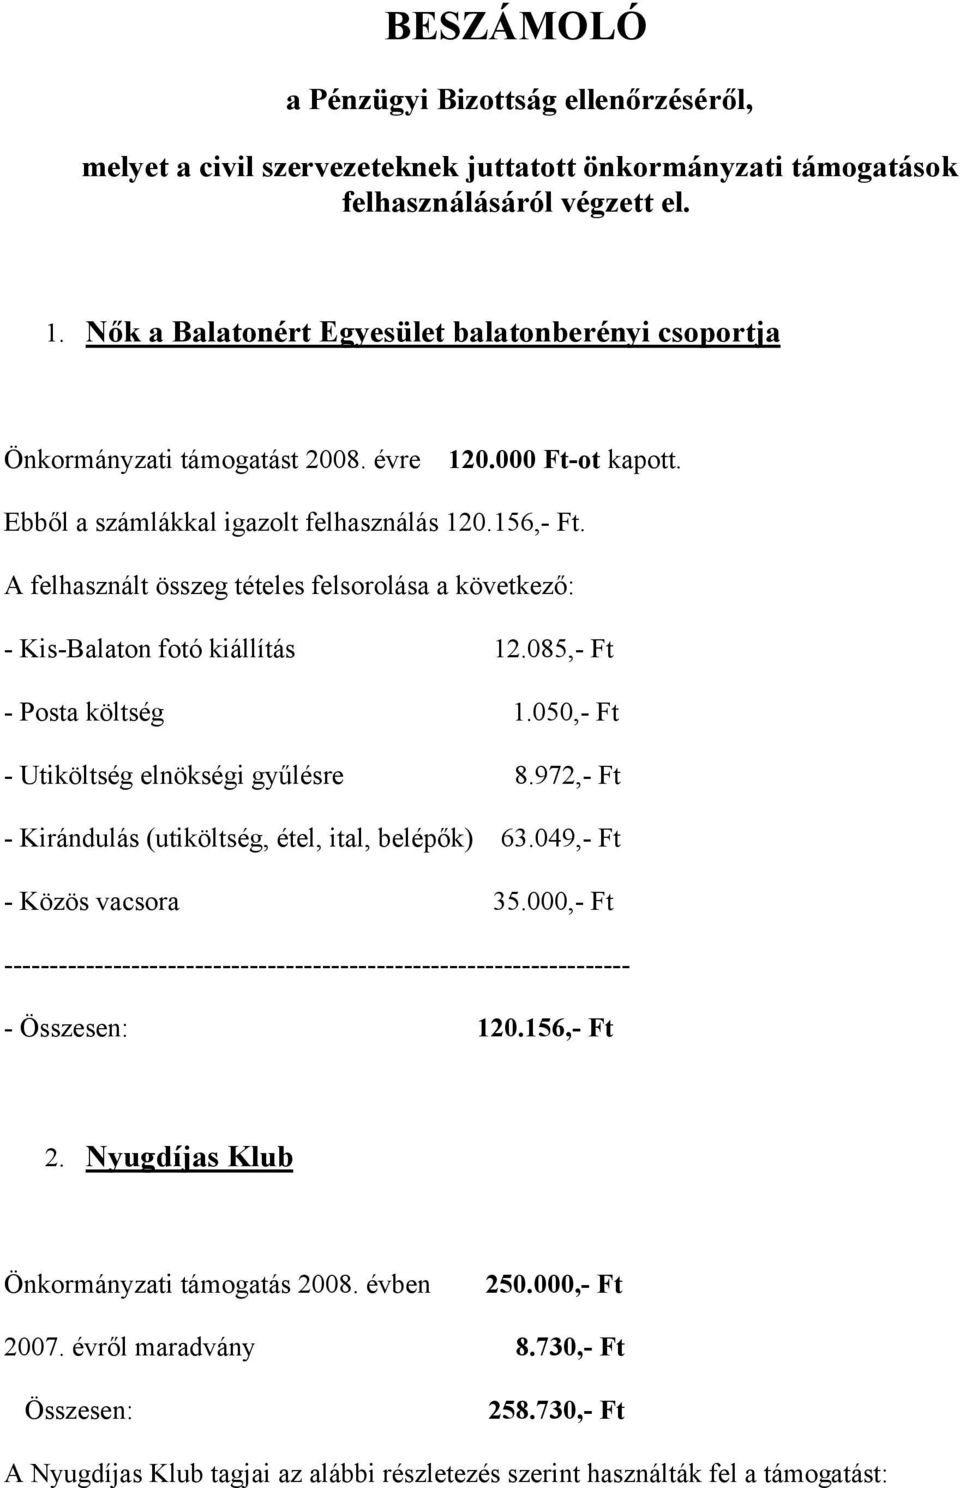 A felhasznált összeg tételes felsorolása a következő: - Kis-Balaton fotó kiállítás 12.085,- Ft - Posta költség 1.050,- Ft - Utiköltség elnökségi gyűlésre 8.